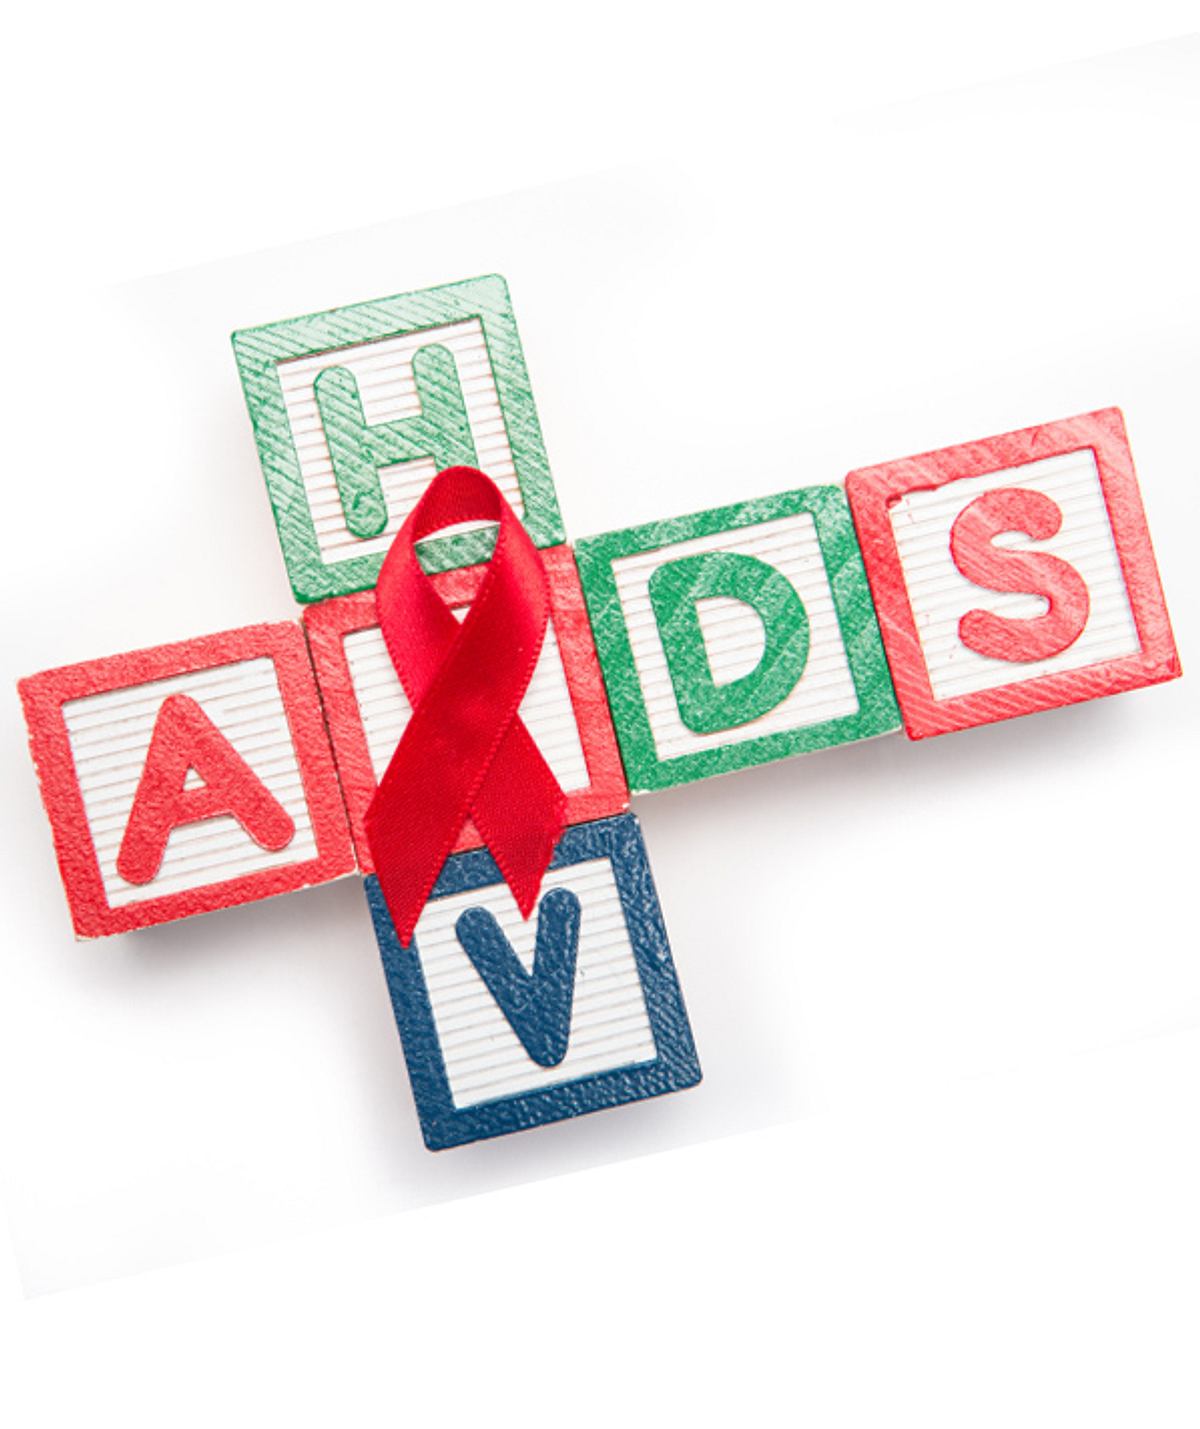 AIDS und HIV!